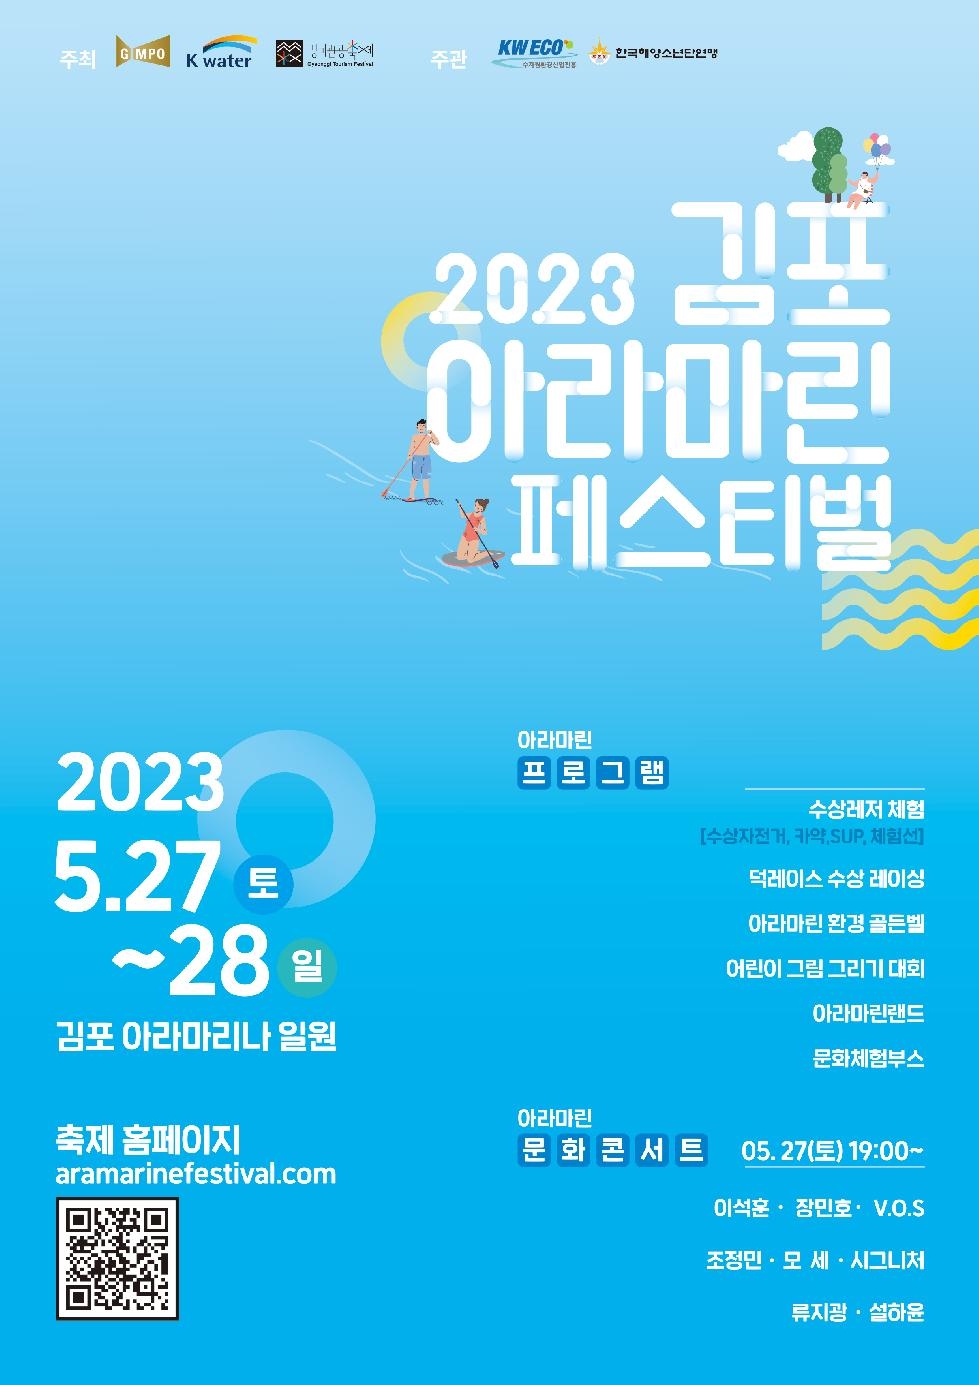 2023 김포 아라마린페스티벌 개최